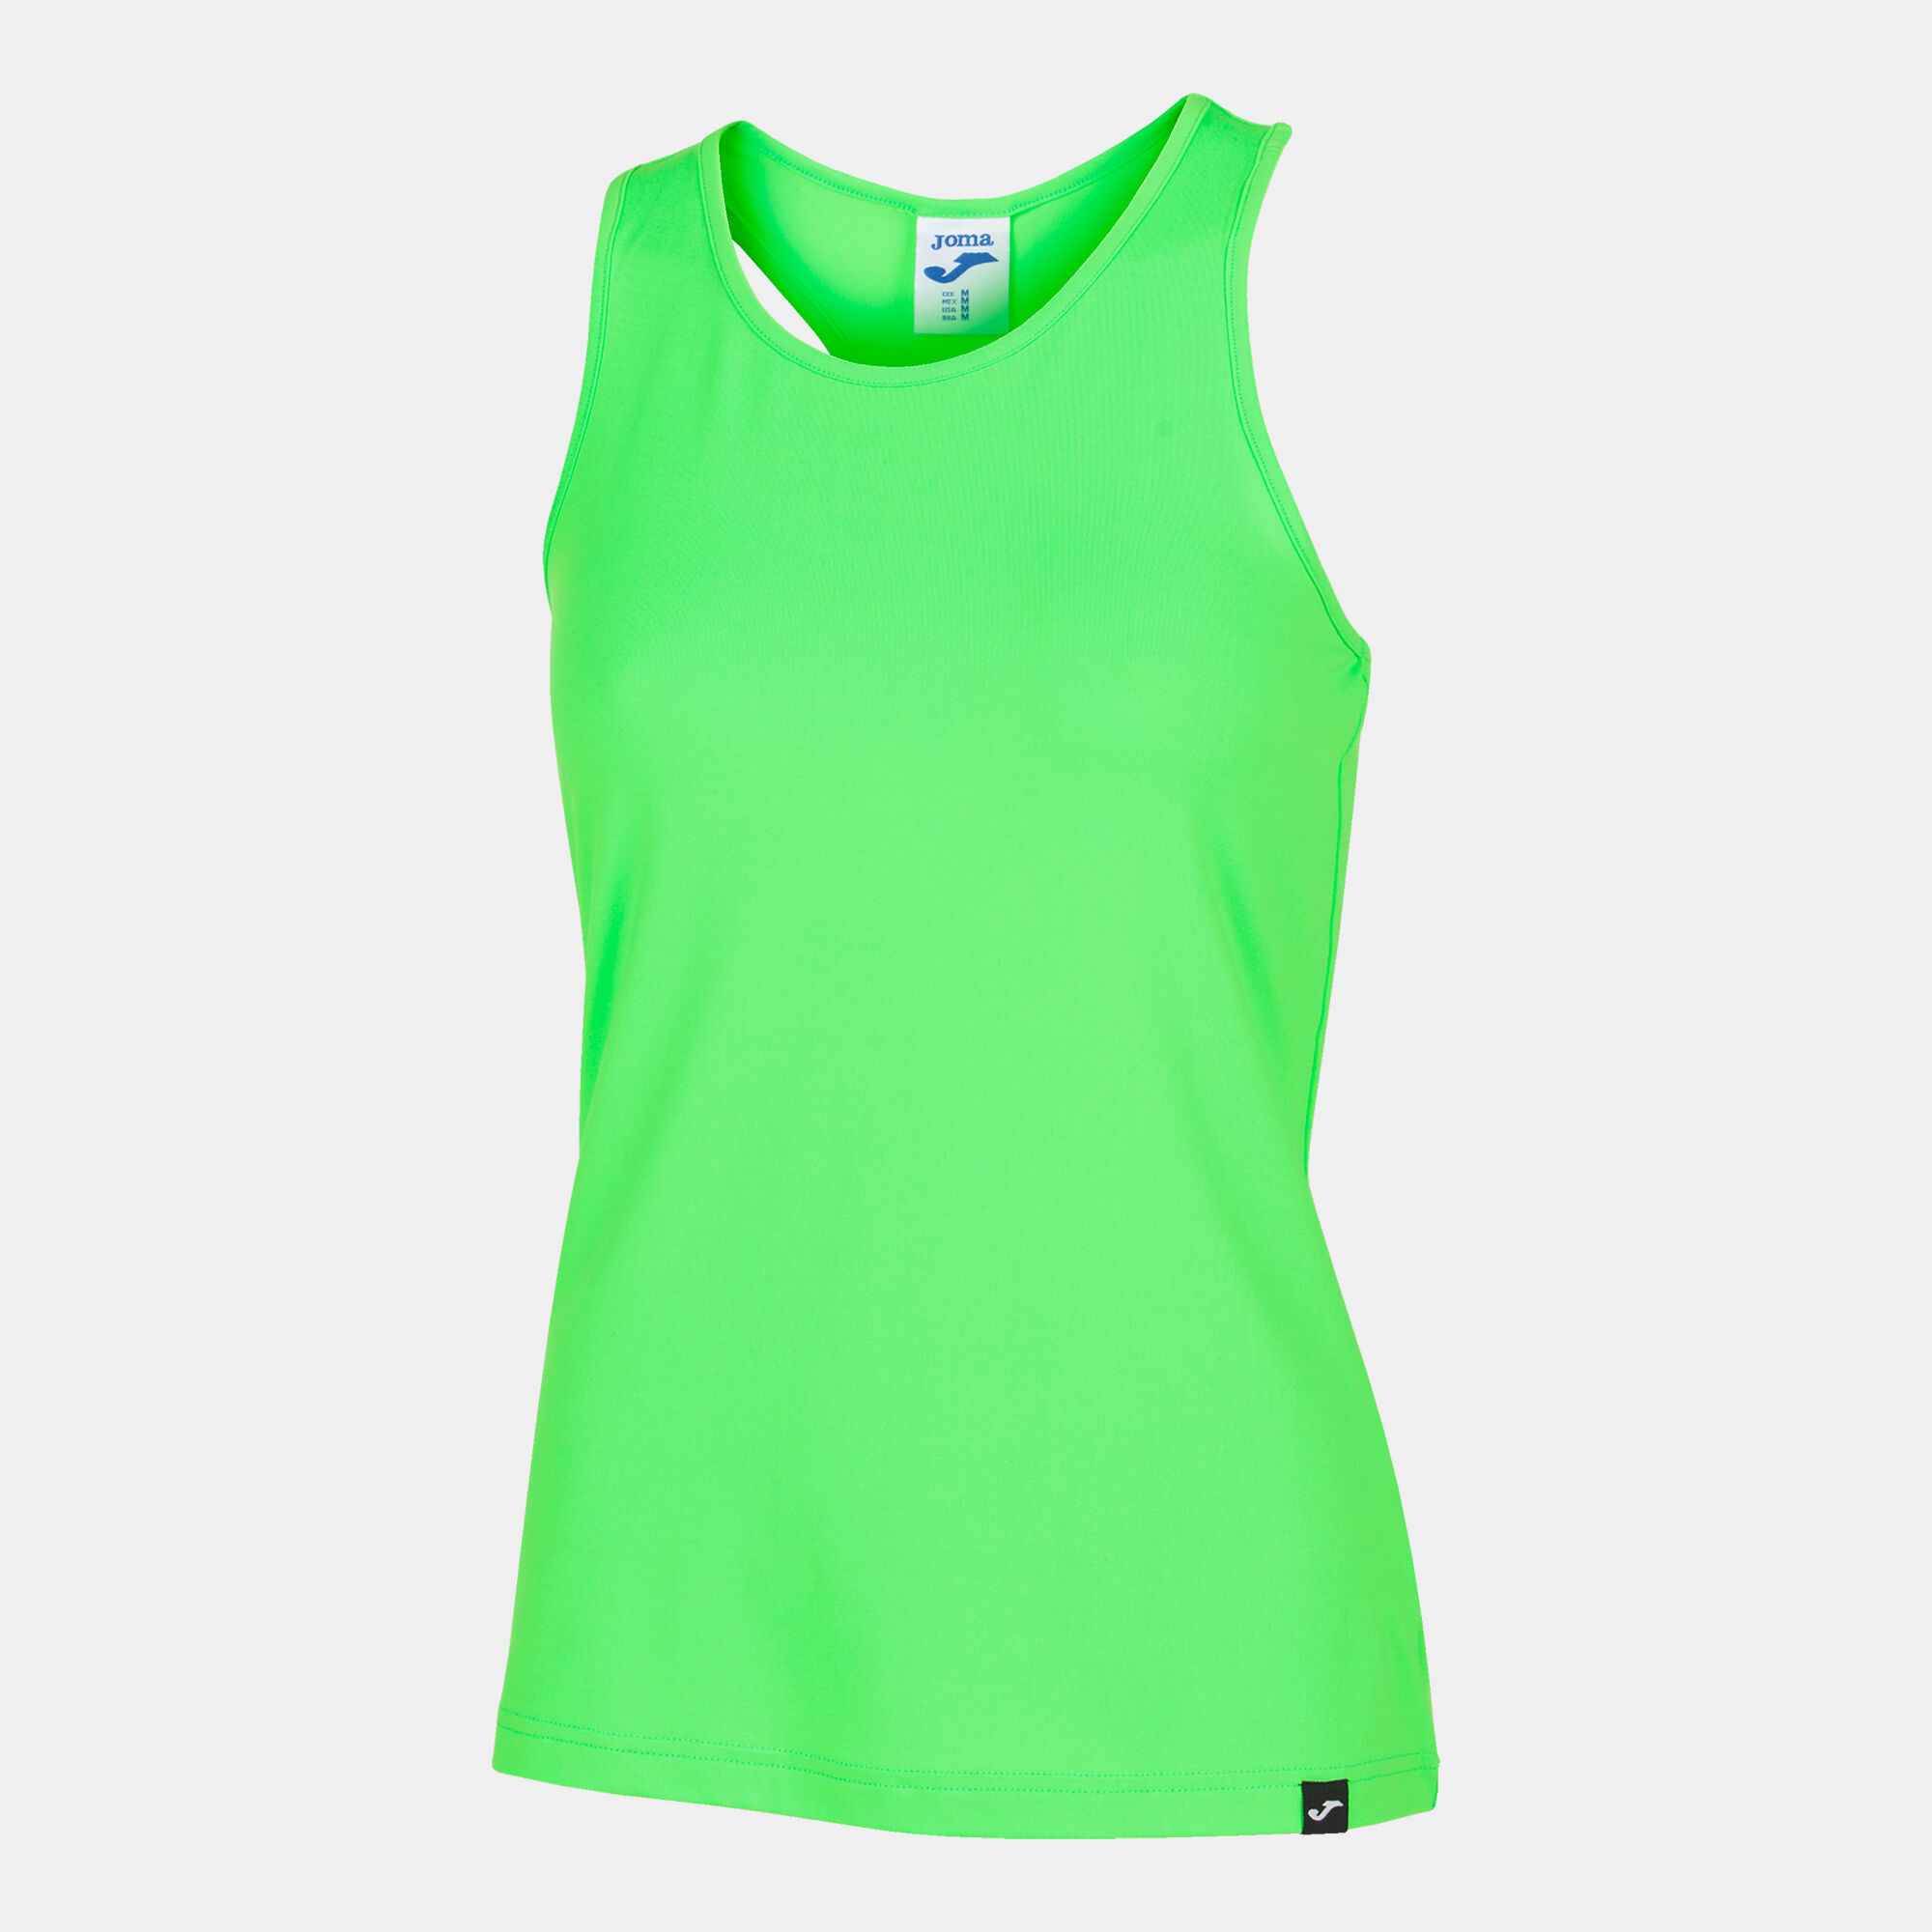 Koszulka na ramiączkach kobiety Torneo fluorescencyjny zielony